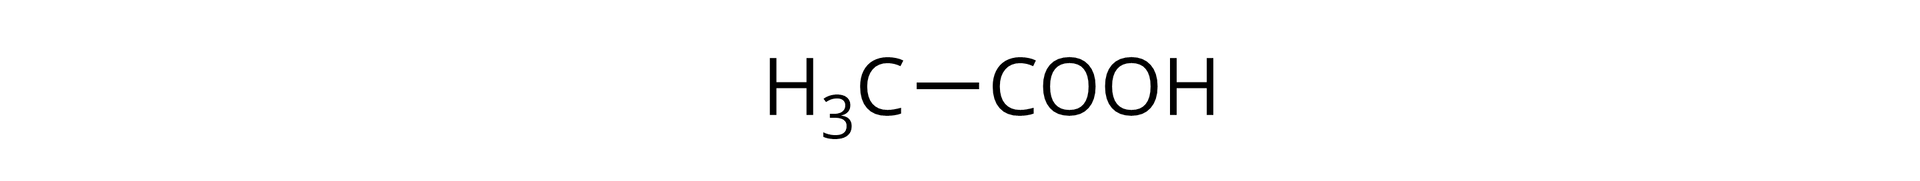 Ilustracja przedstawiająca wzór półstrukturalny kwasu etanowego zbudowanego z grupy karboksylowej COOH połączonej z grupa metylową CH3.